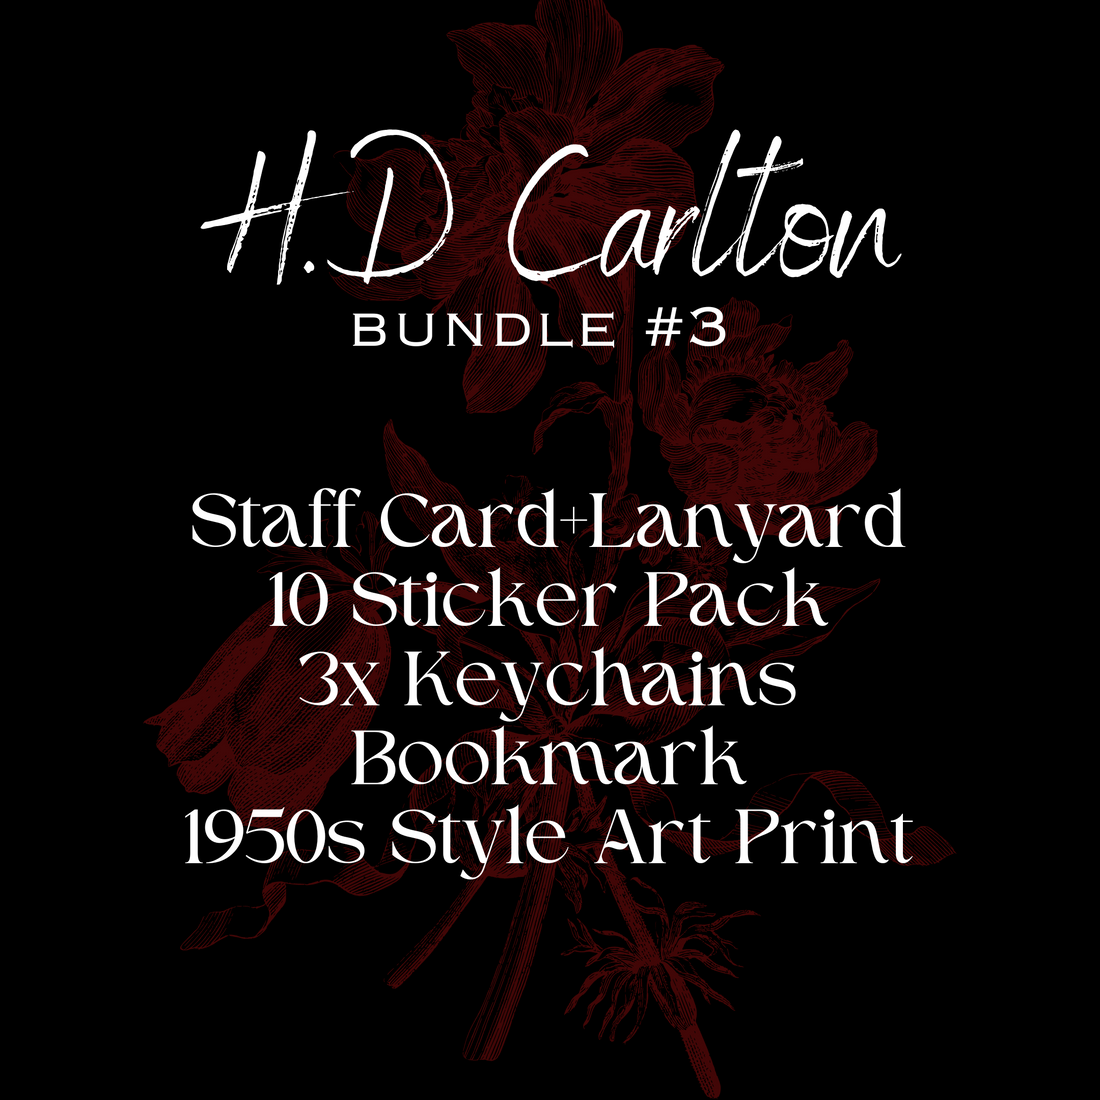 H.D Carlton - Bundle #3